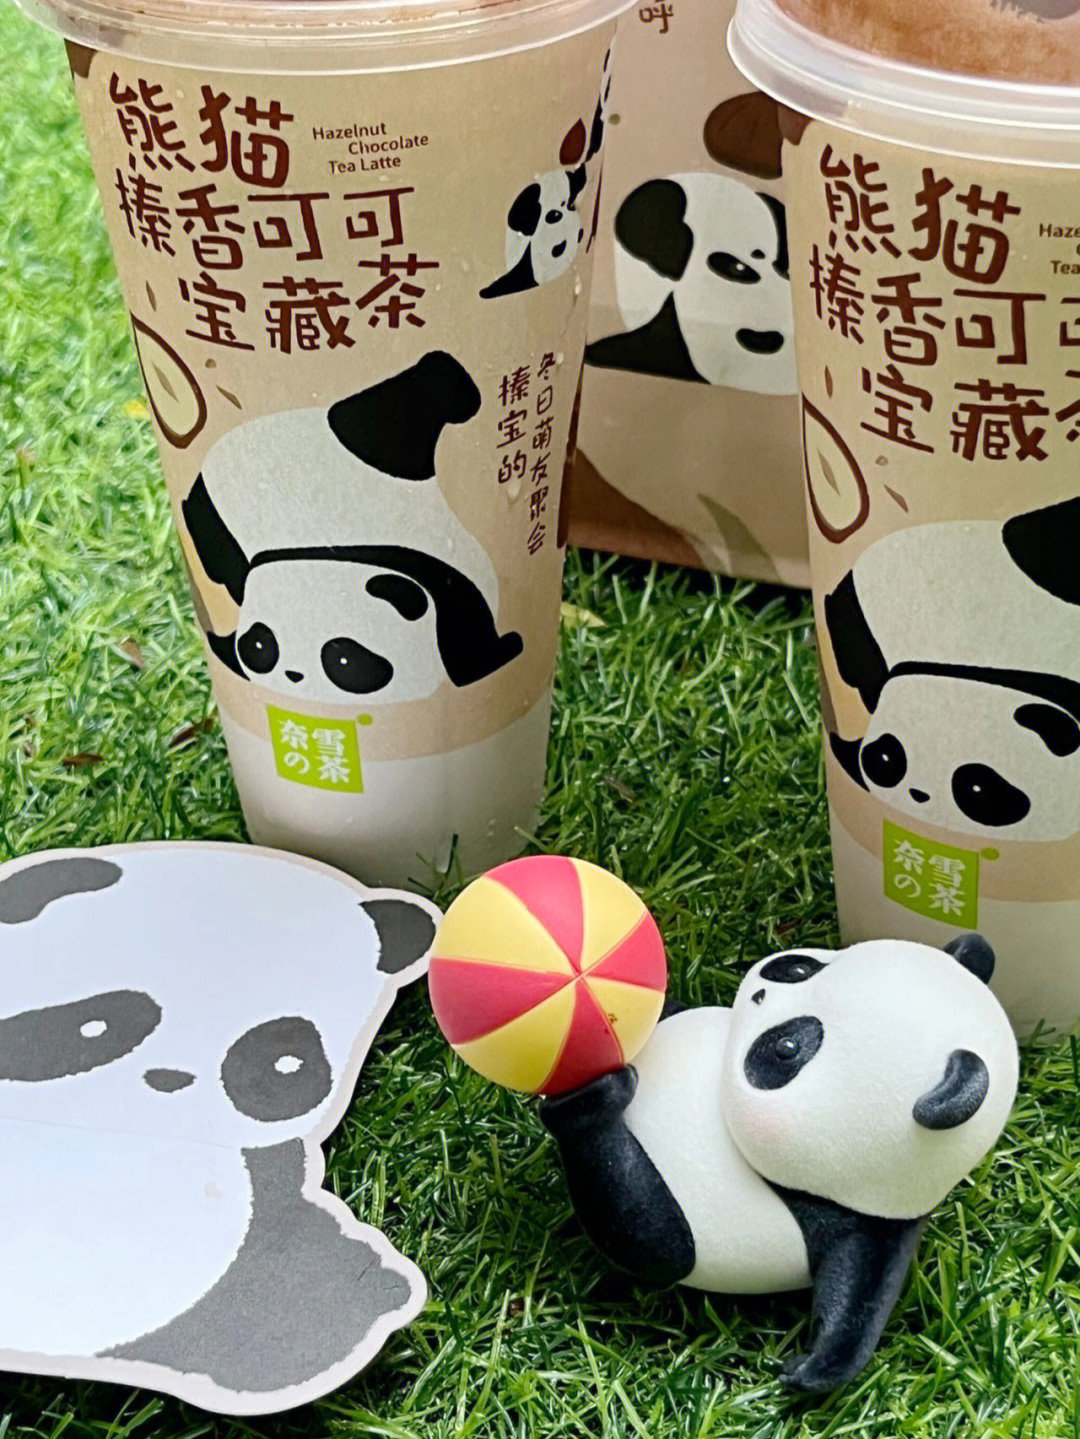 熊猫伙伴奶茶logo图片